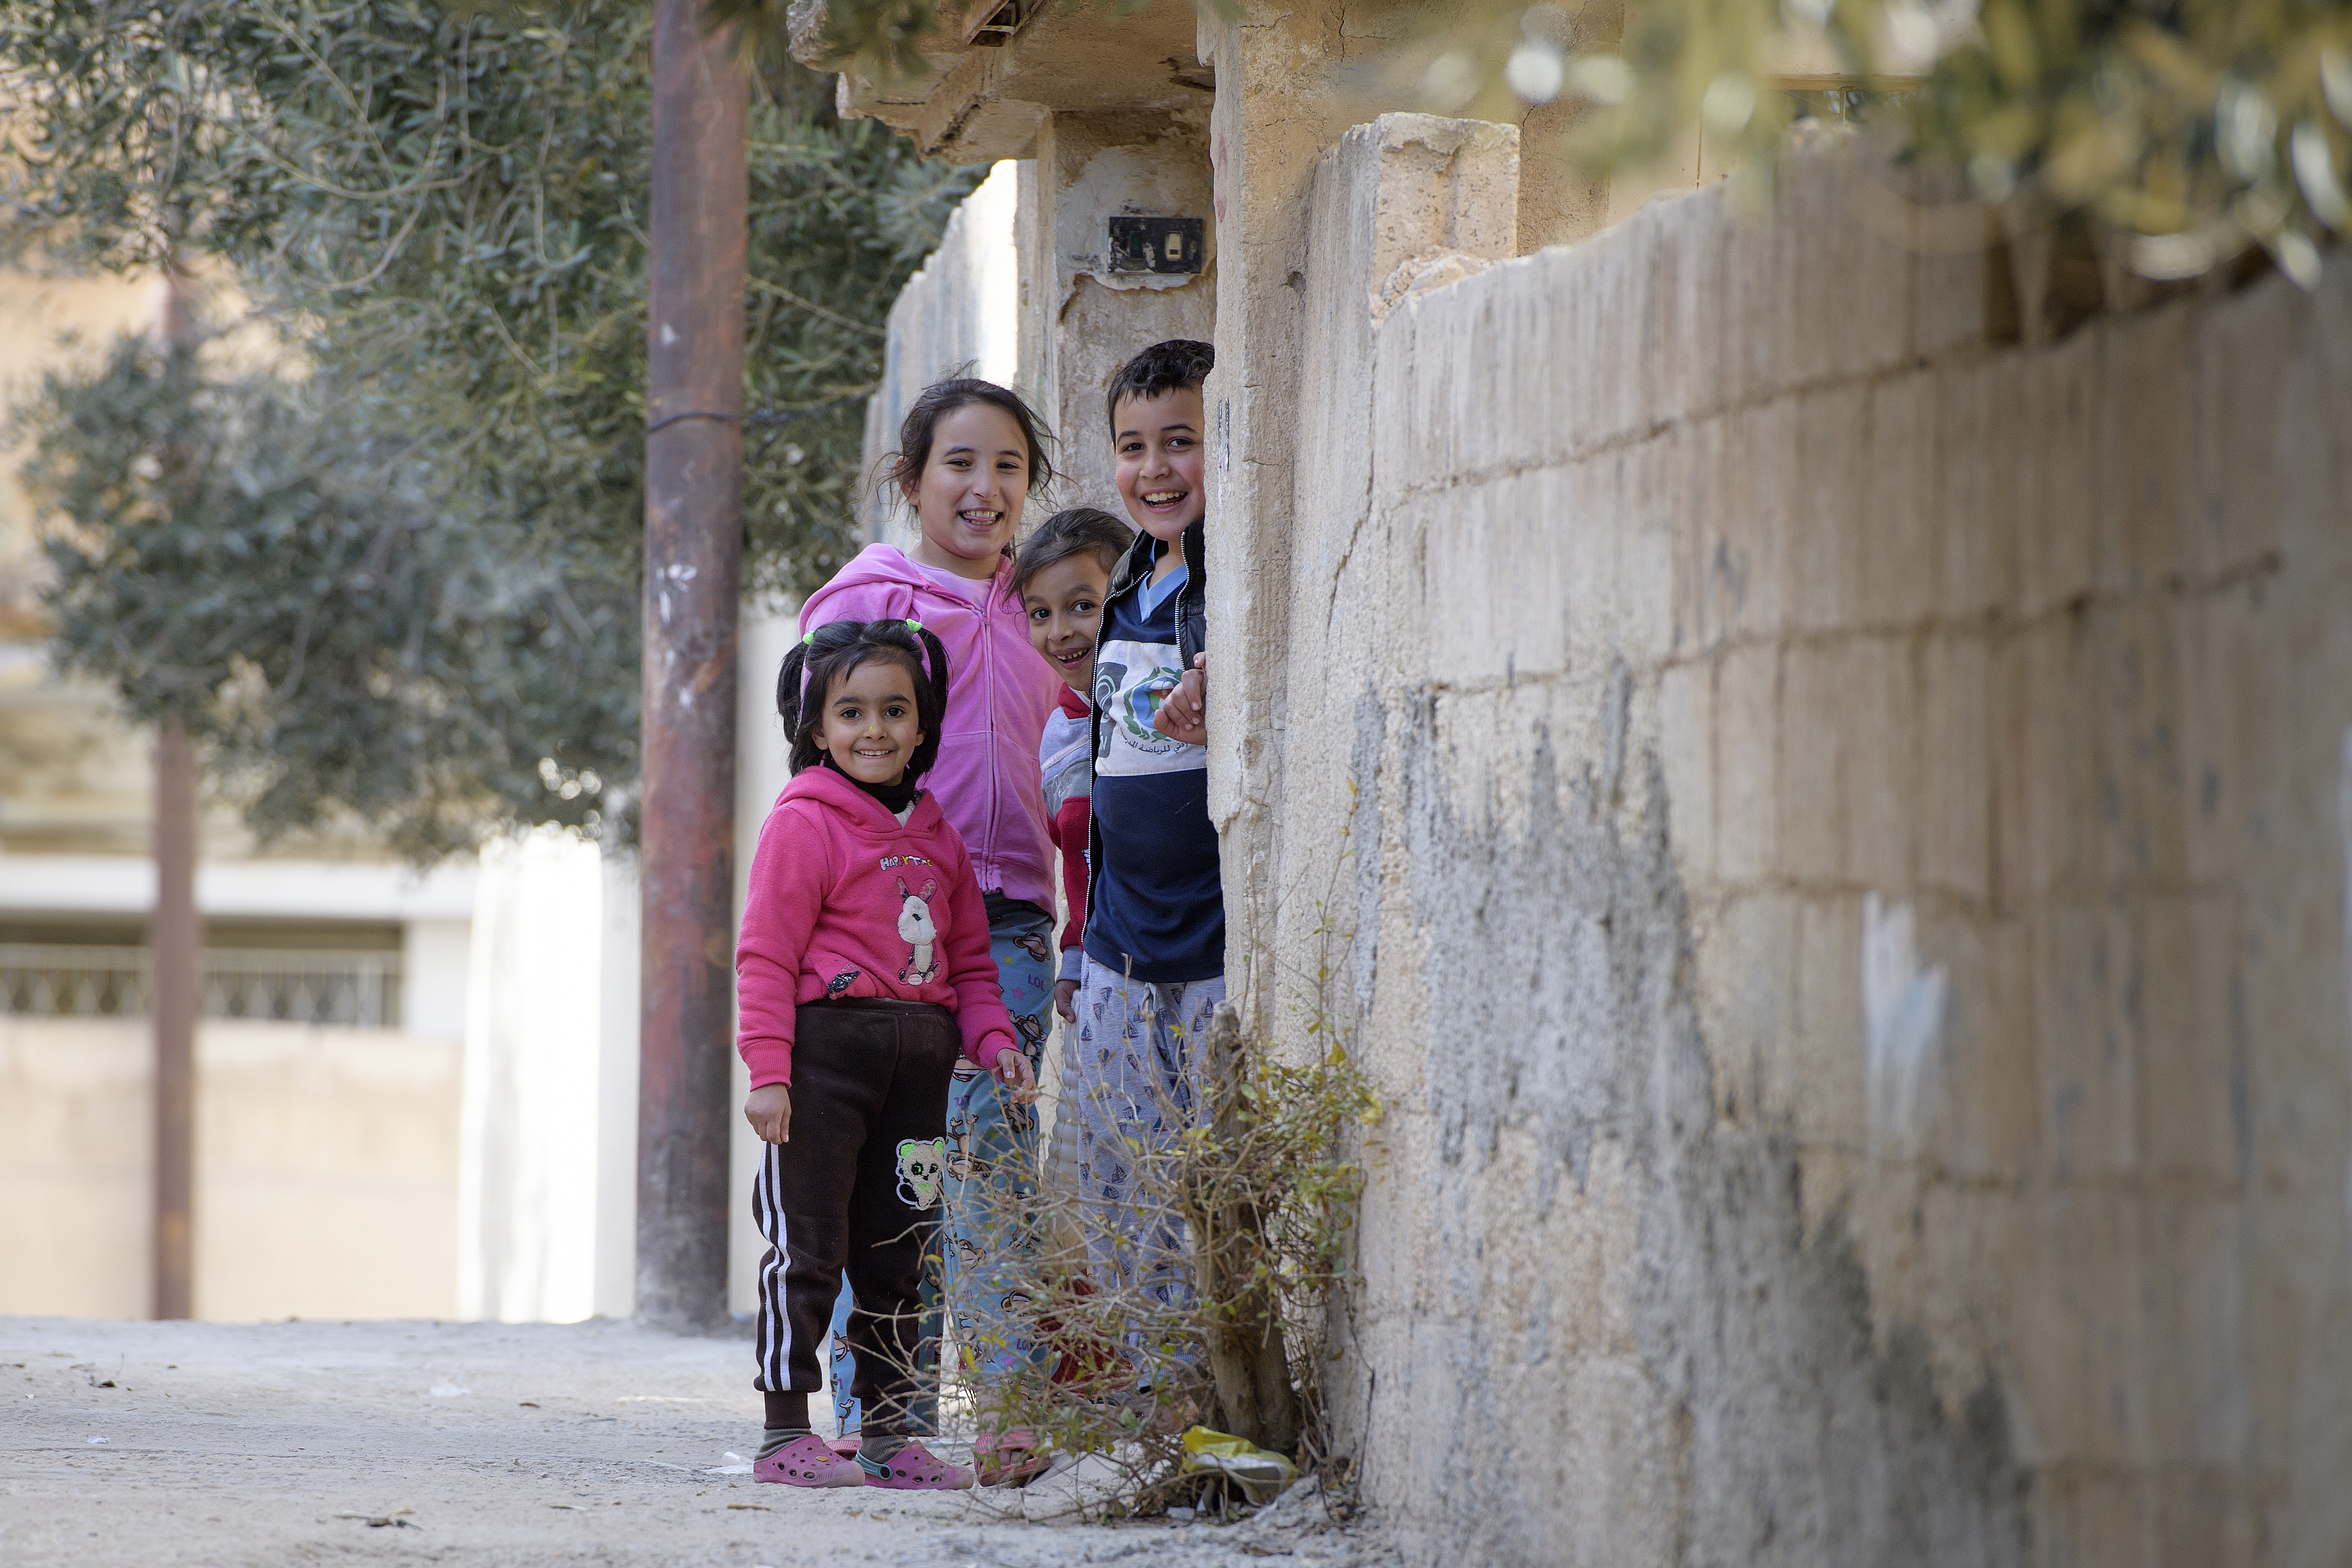 Children in Mafraq, Jordan